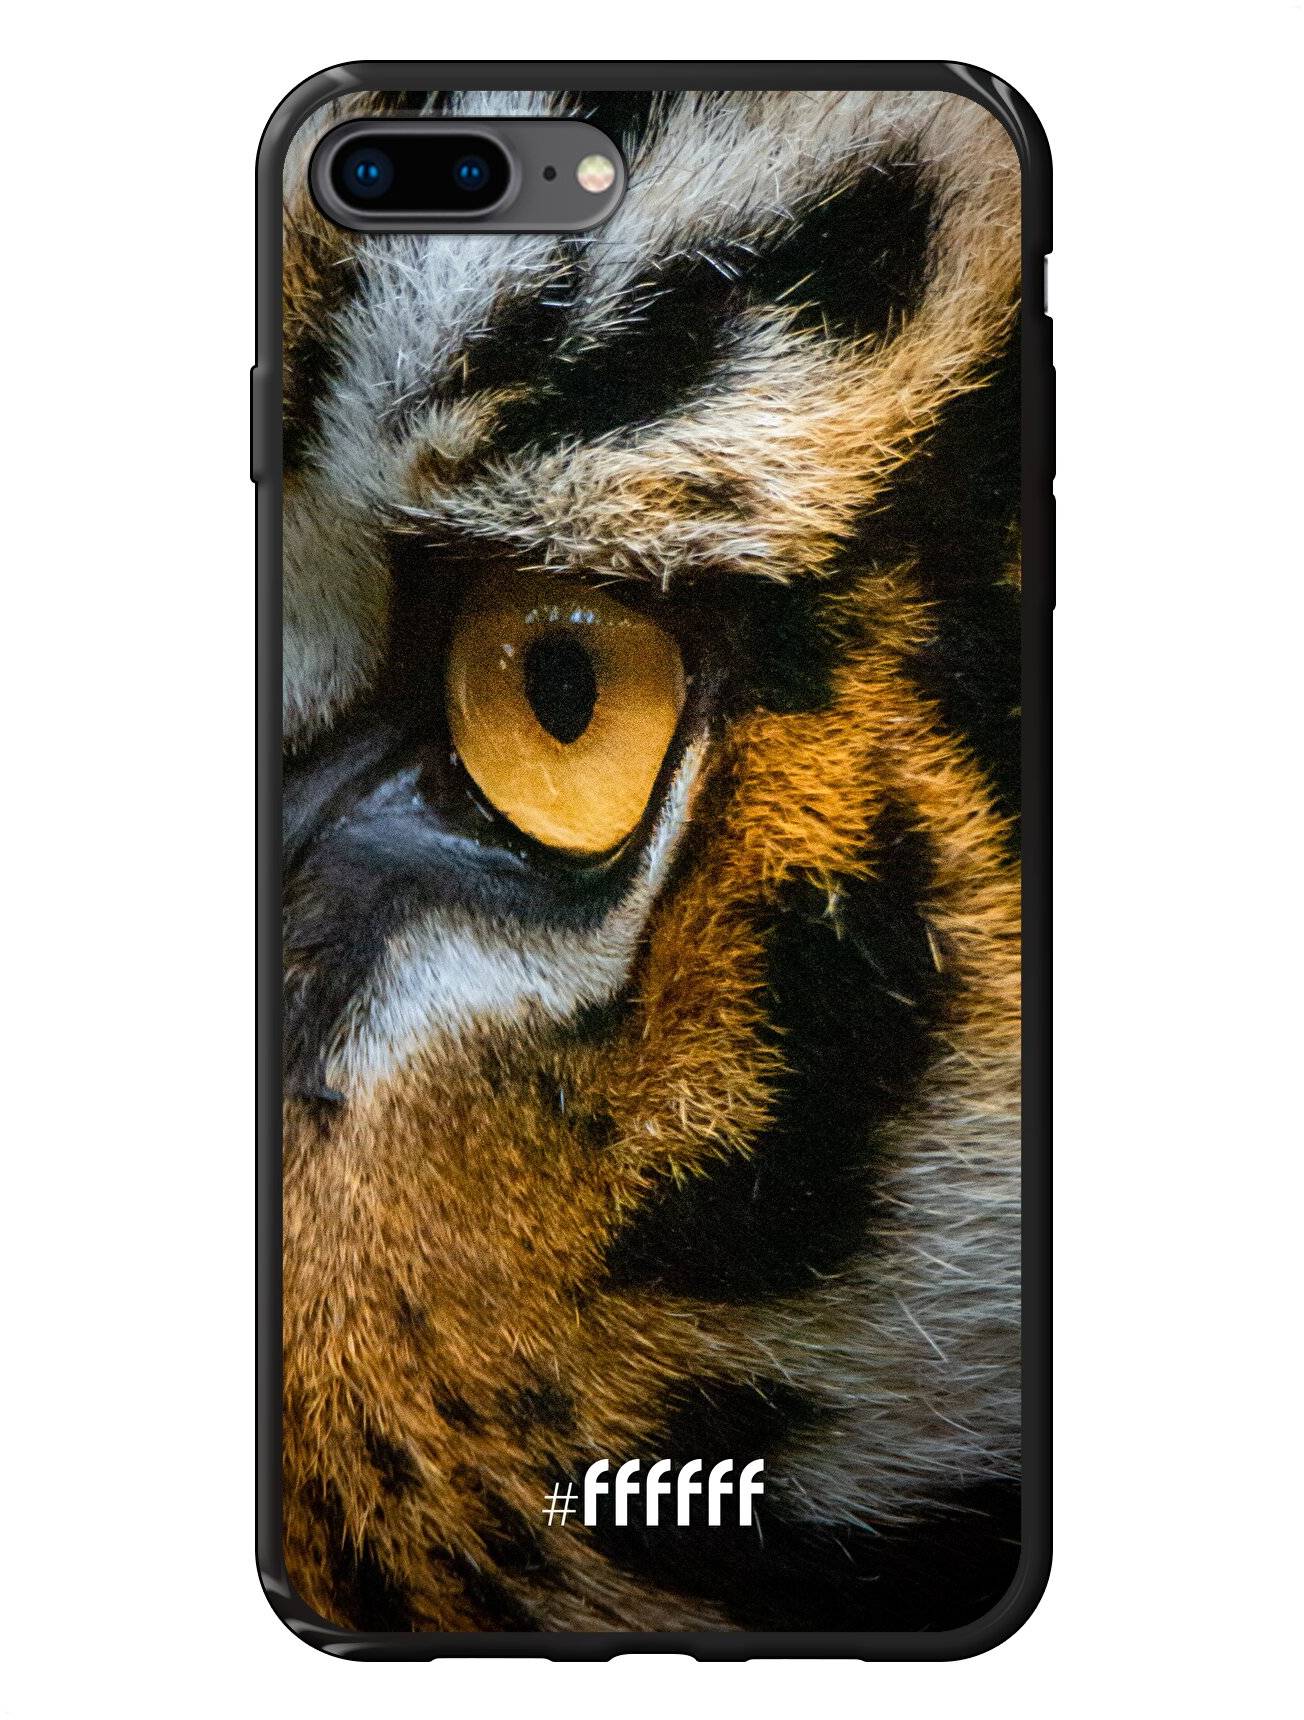 Tiger iPhone 8 Plus